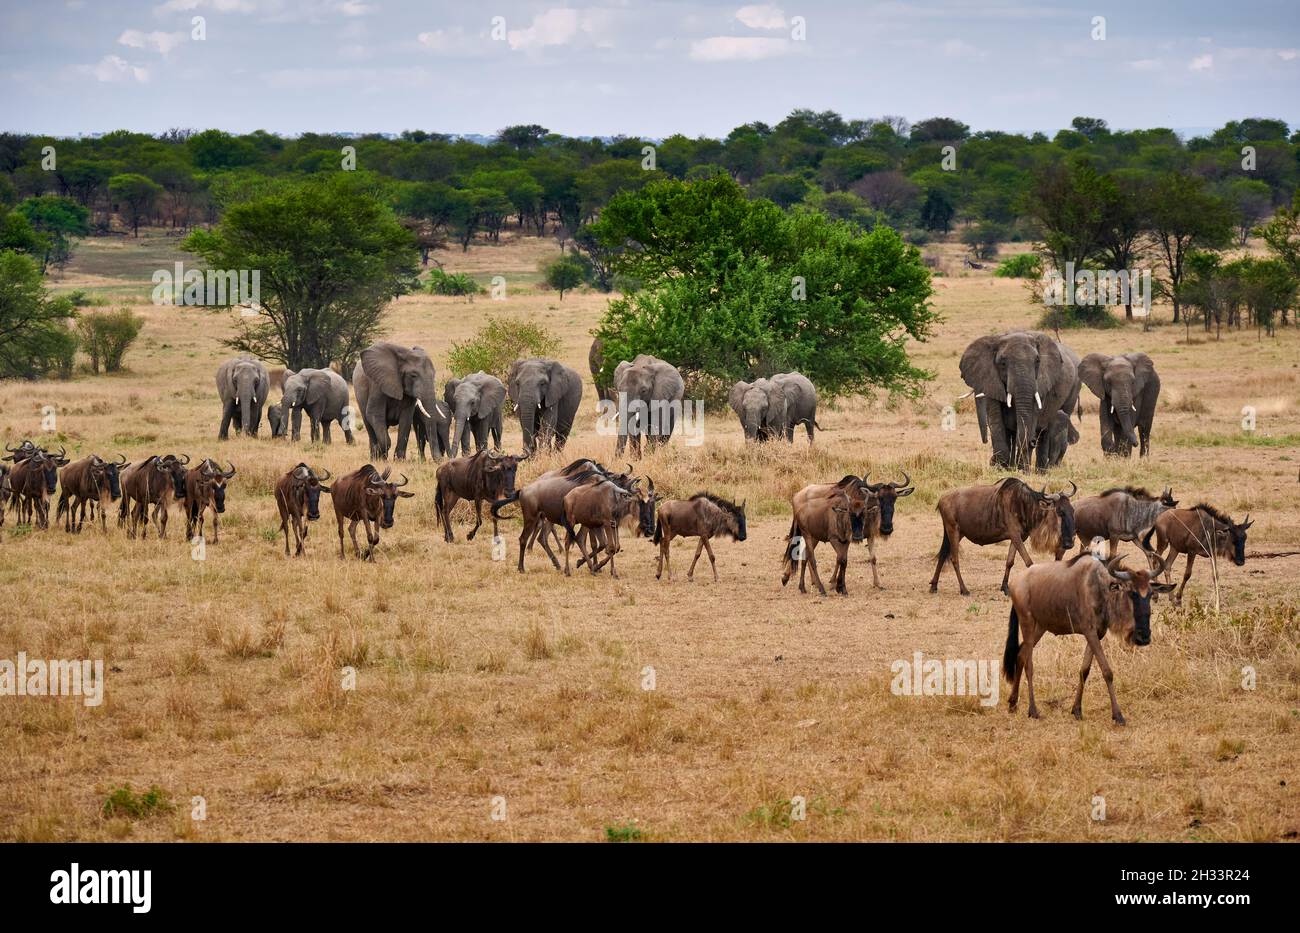 Una manada de ñus azul (Connochaetes taurinus) en gran migración pasando frente a una manada de elefante arbusto africano (Loxodonta africana) inSereng Foto de stock